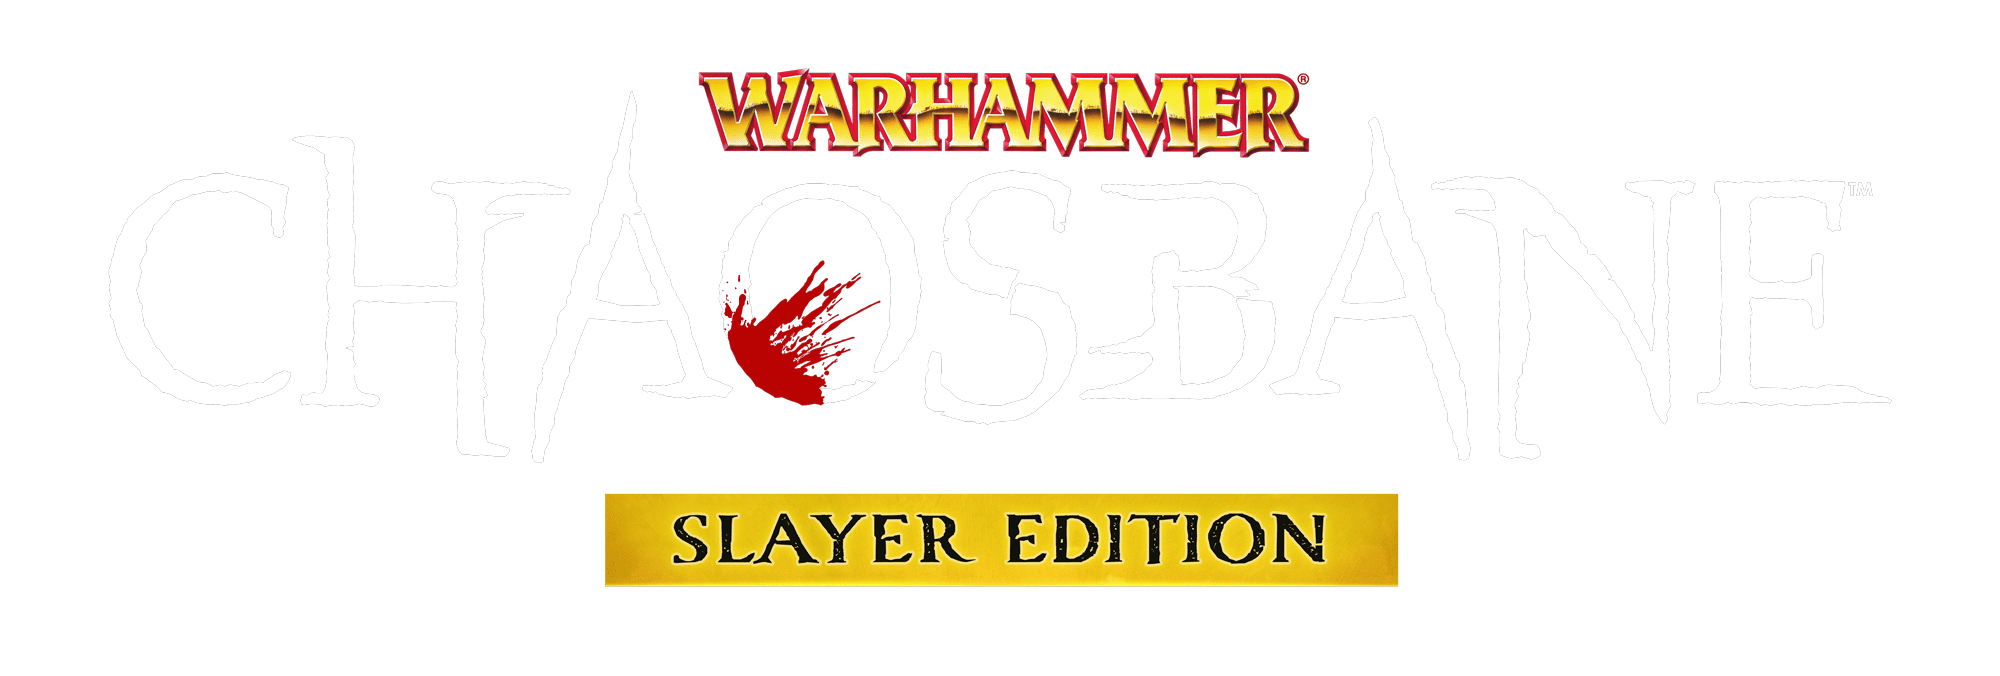 Comprar o Warhammer Ultimate Pack: Hack and Slash